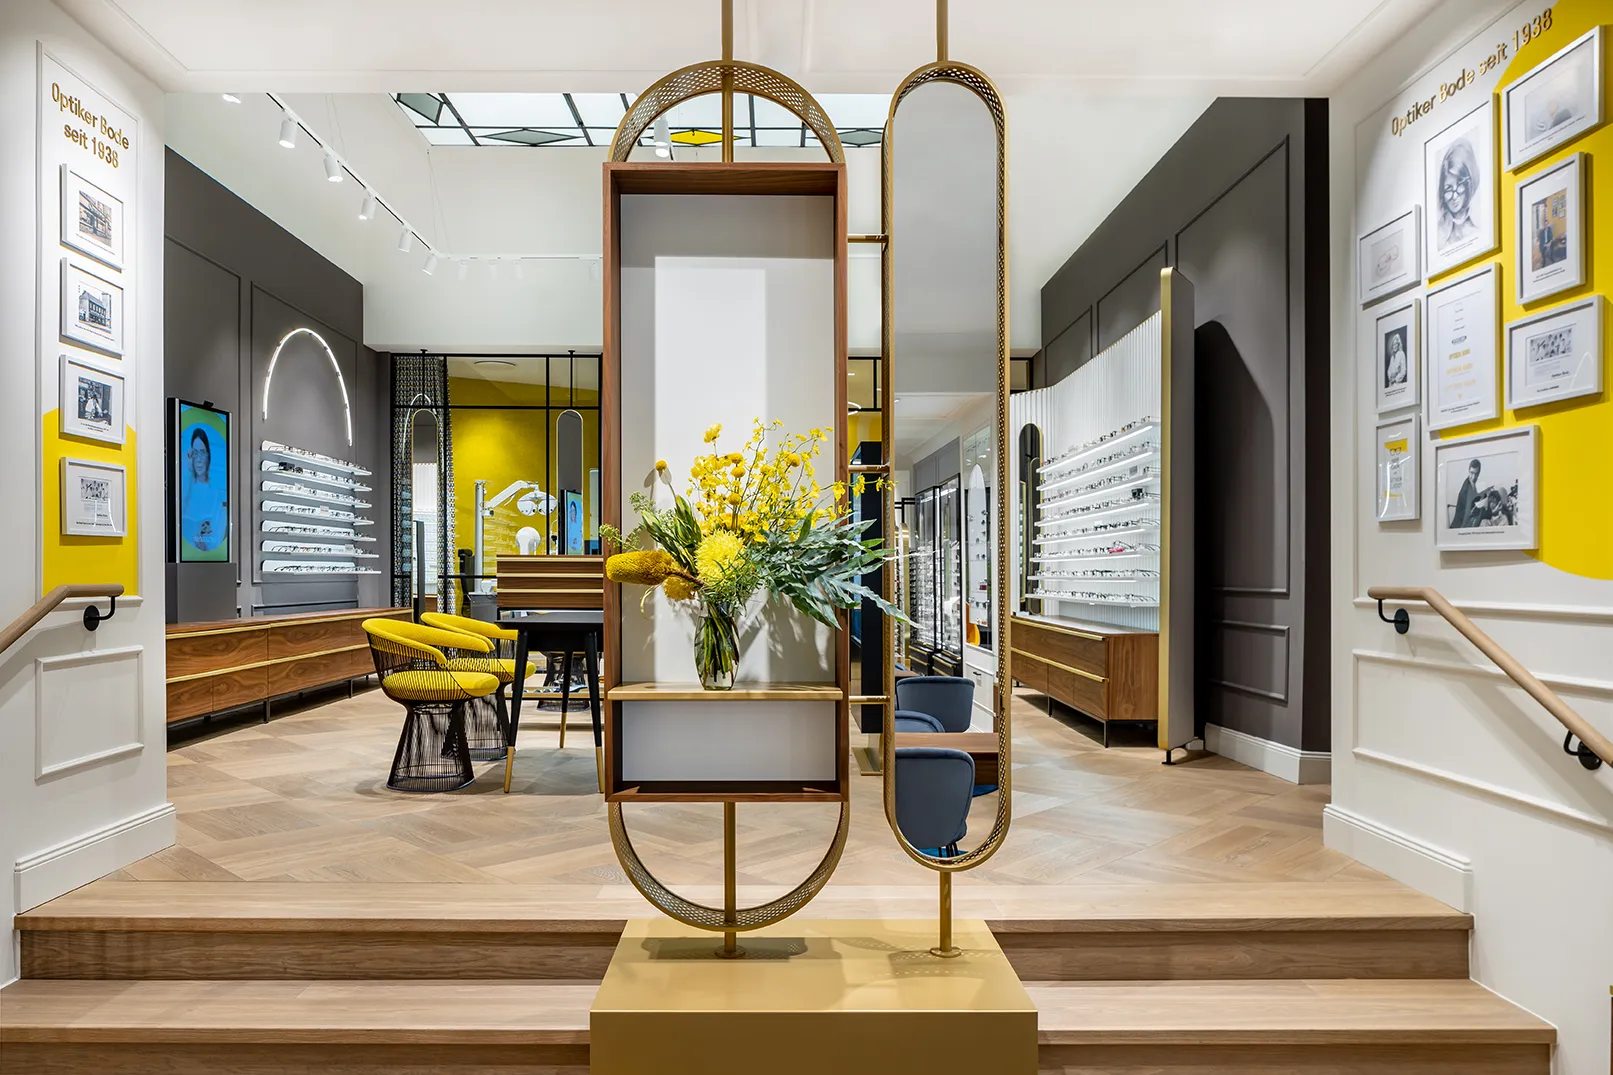 Innenaufnahme des Optiker Bode Stores in Hamburg mit Regal und Spiegel im Bildmittelpunkt